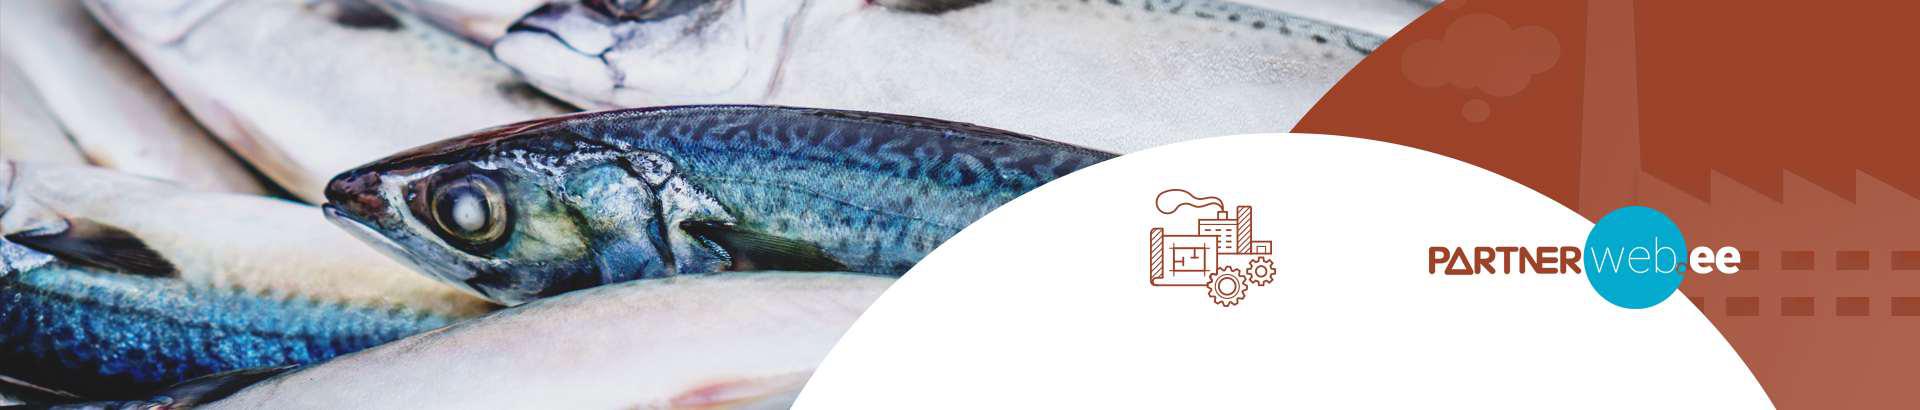 Suurim mainega ettevõte PALJASSAARE KALATÖÖSTUS AS, maineskoor 17450, aktiivseid äriseoseid 1. Tegutseb peamiselt valdkonnas: Kala töötlemine.